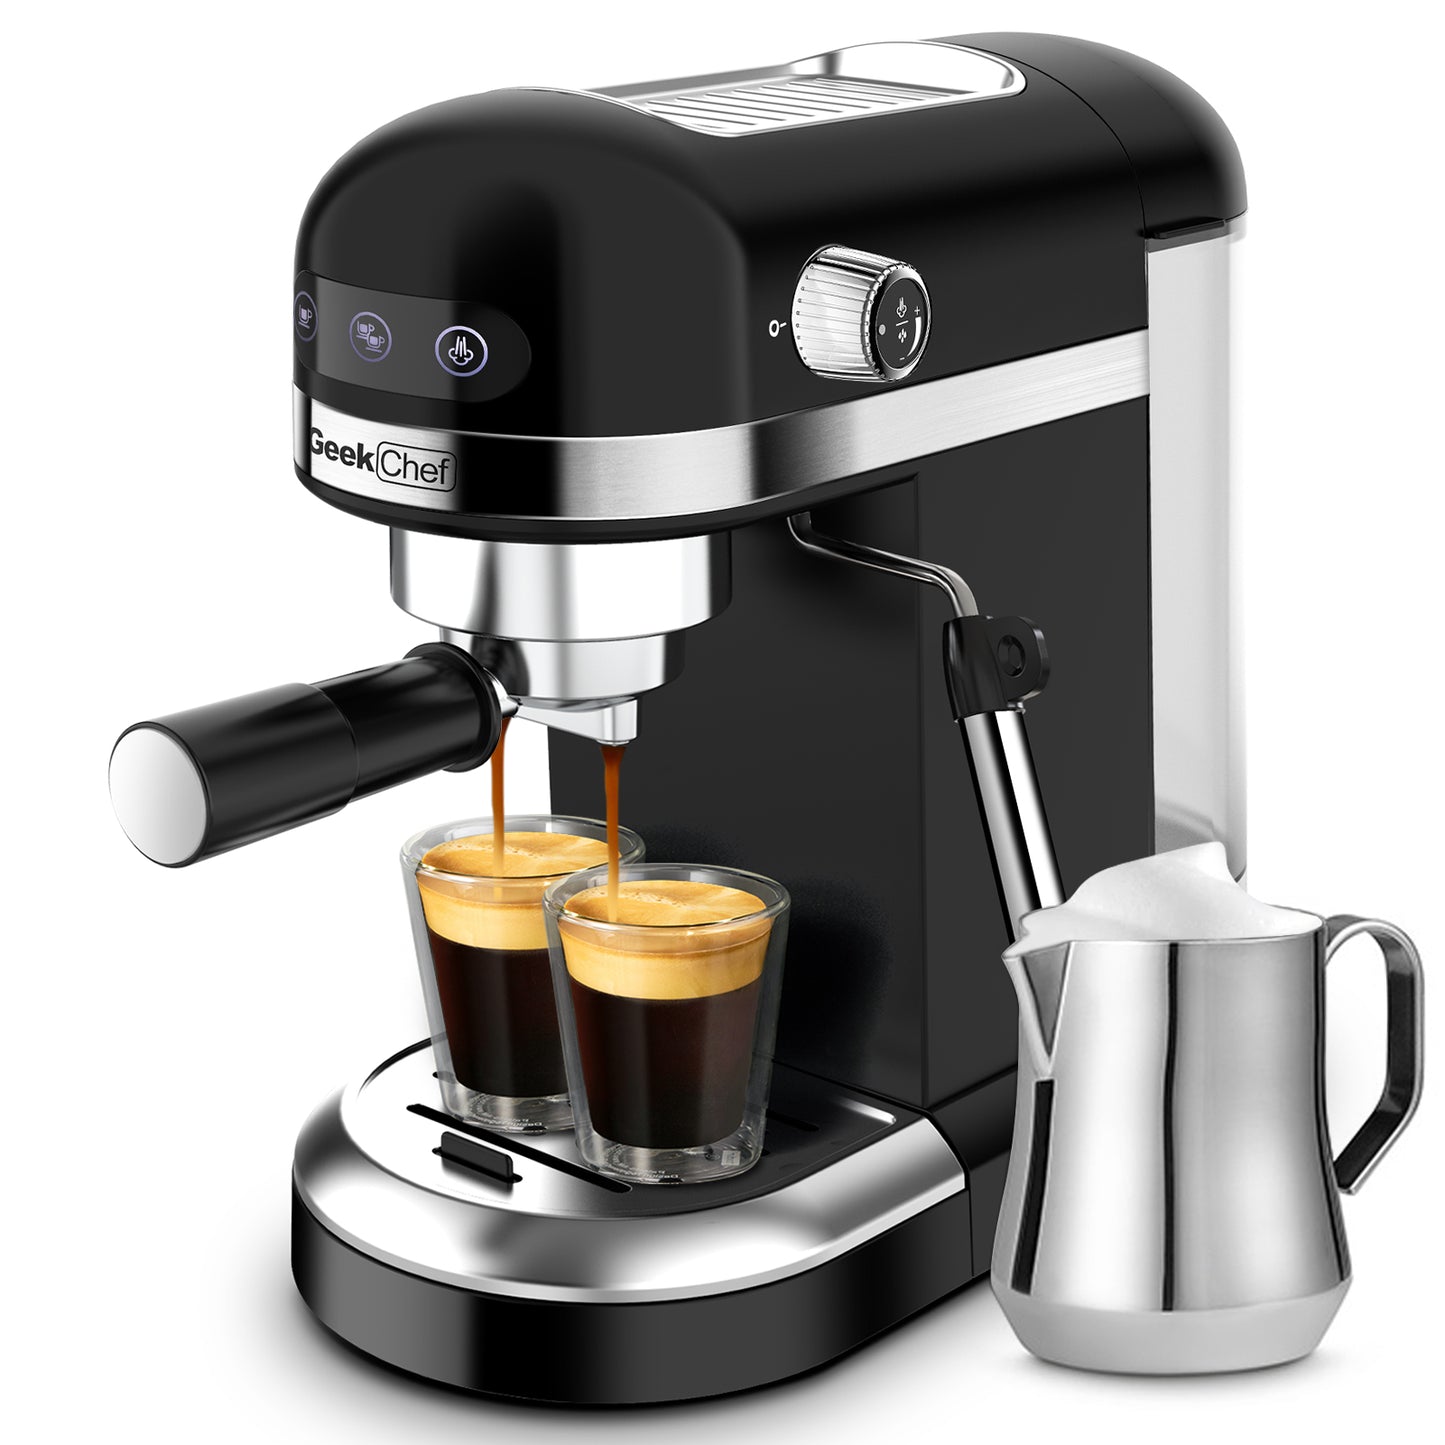 Geek Chef Espresso Machine,20 bar espresso machine with milk frother f –  GeekChefKitchen